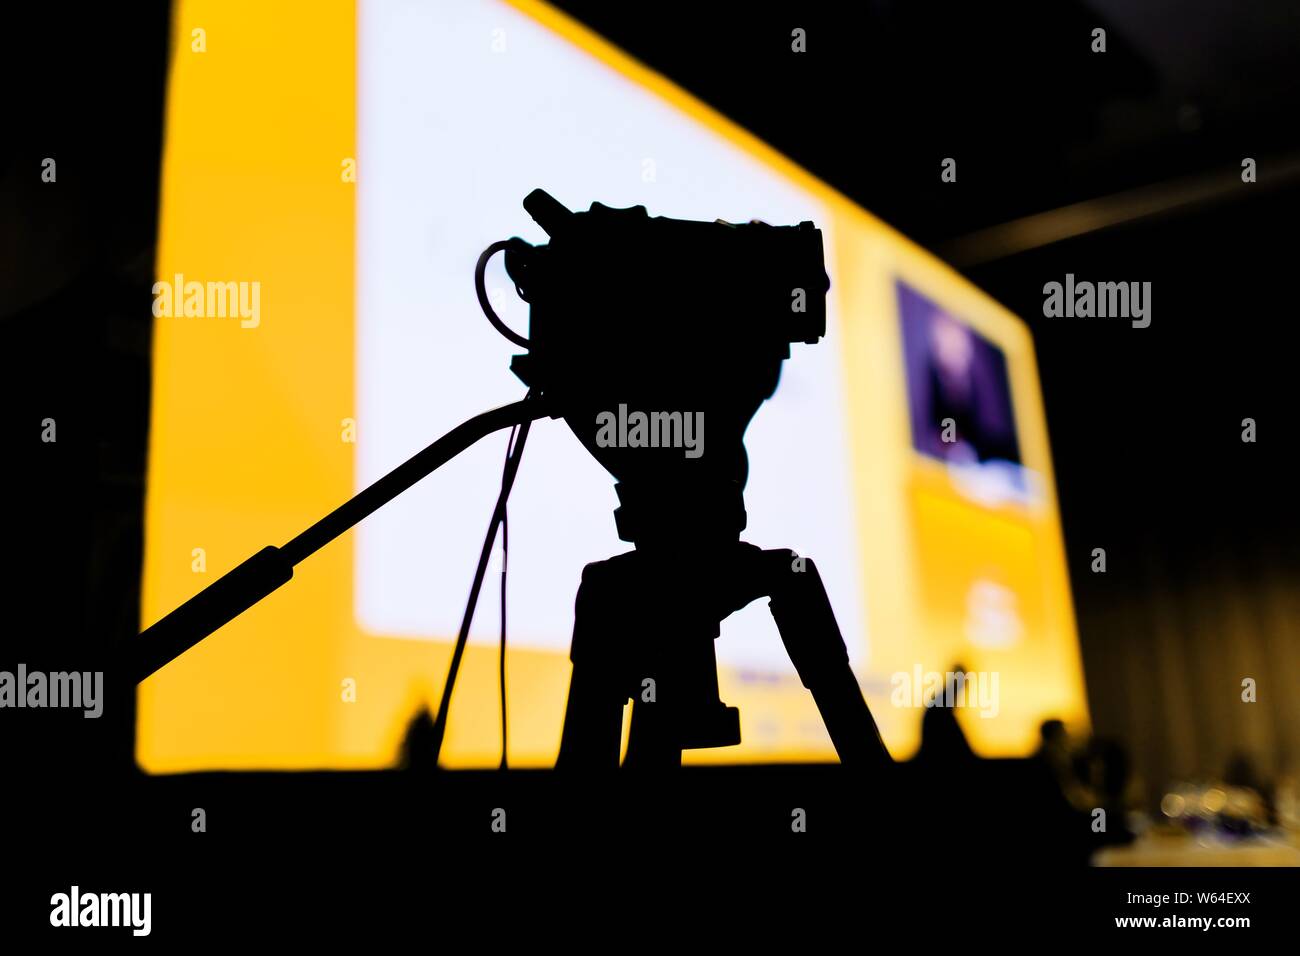 Conférence de Tournage avec caméra vidéo, silhouette de petit appareil photo d'un côté contre l'écran Banque D'Images